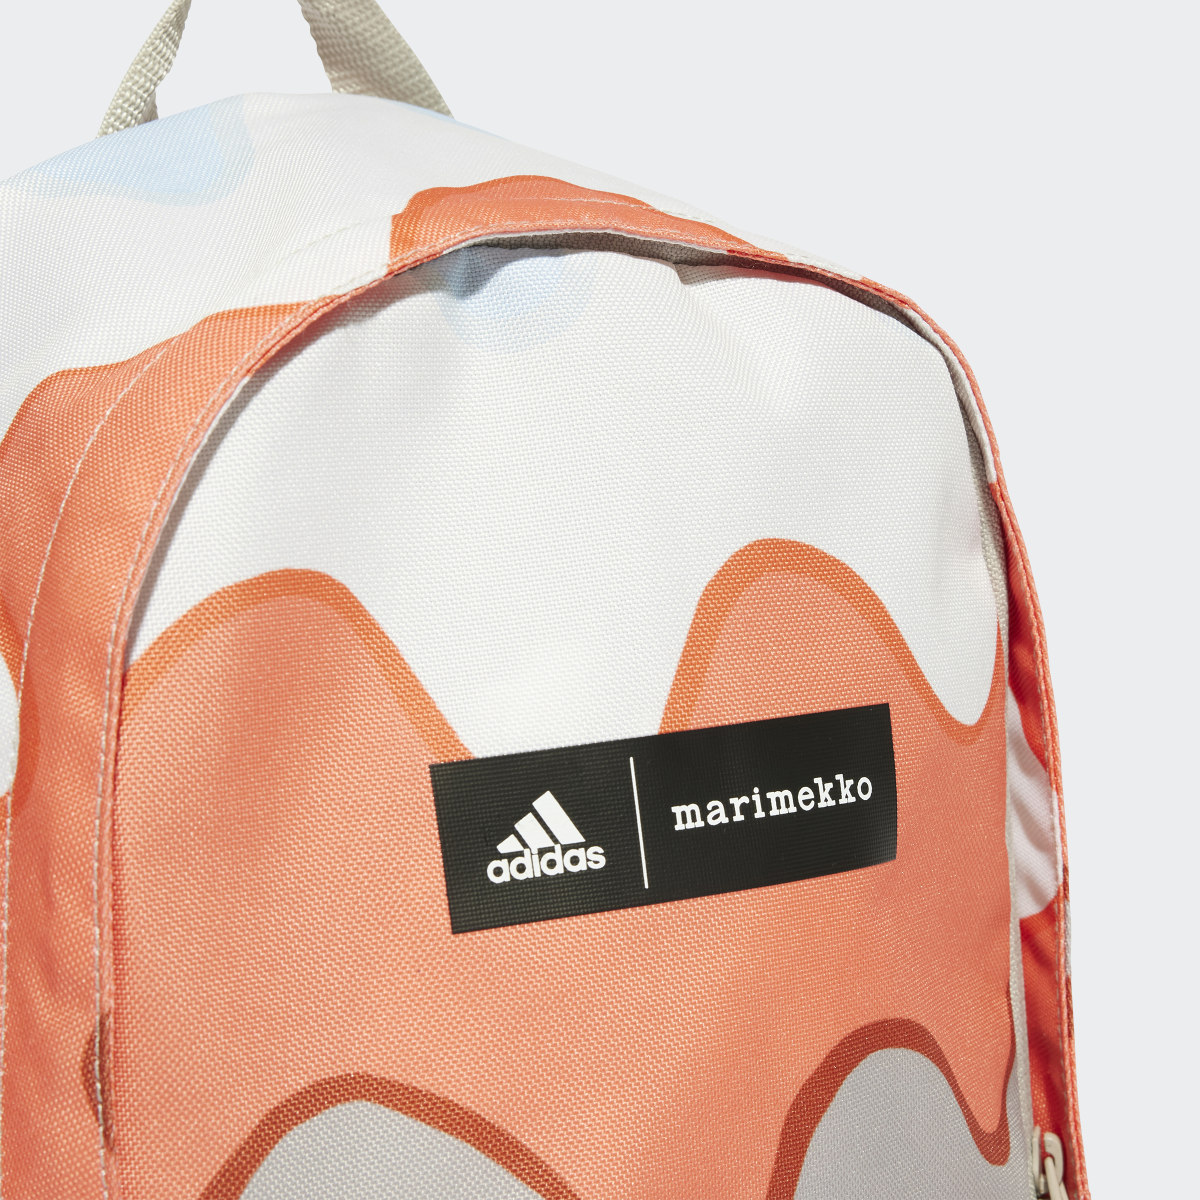 Adidas x Marimekko Backpack. 7